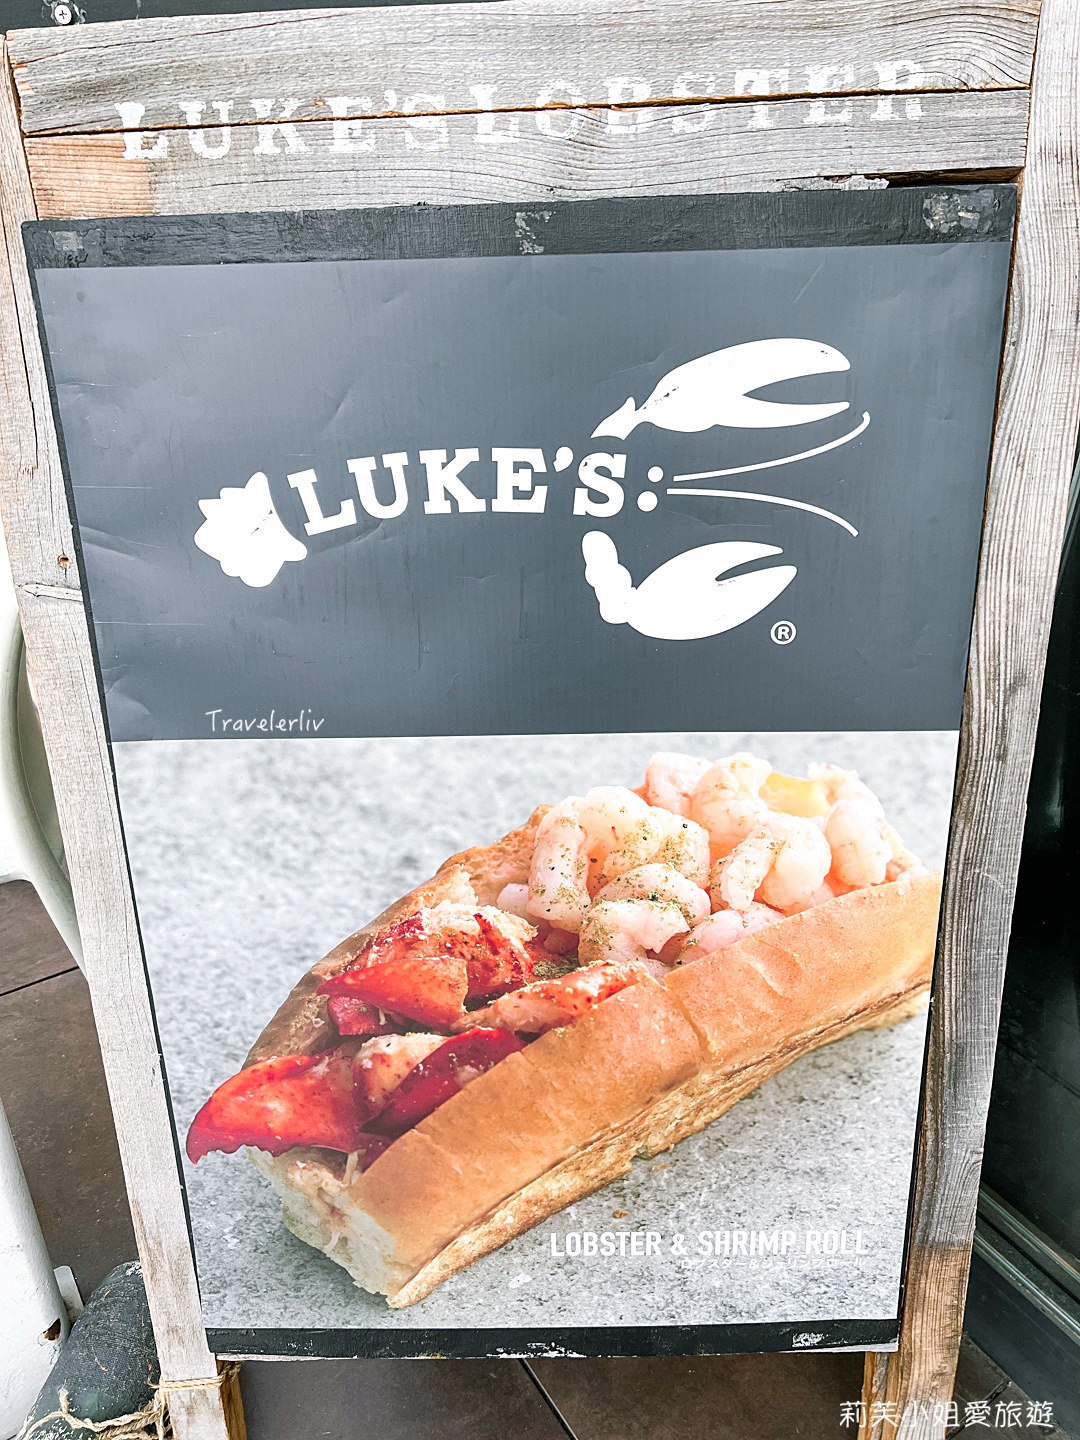 [東京美食] Luke’s Lobster 龍蝦堡，來自紐約的人氣龍蝦堡，環境舒適的IG打卡新宿店，另有表參道跟涉谷店 @莉芙小姐愛旅遊